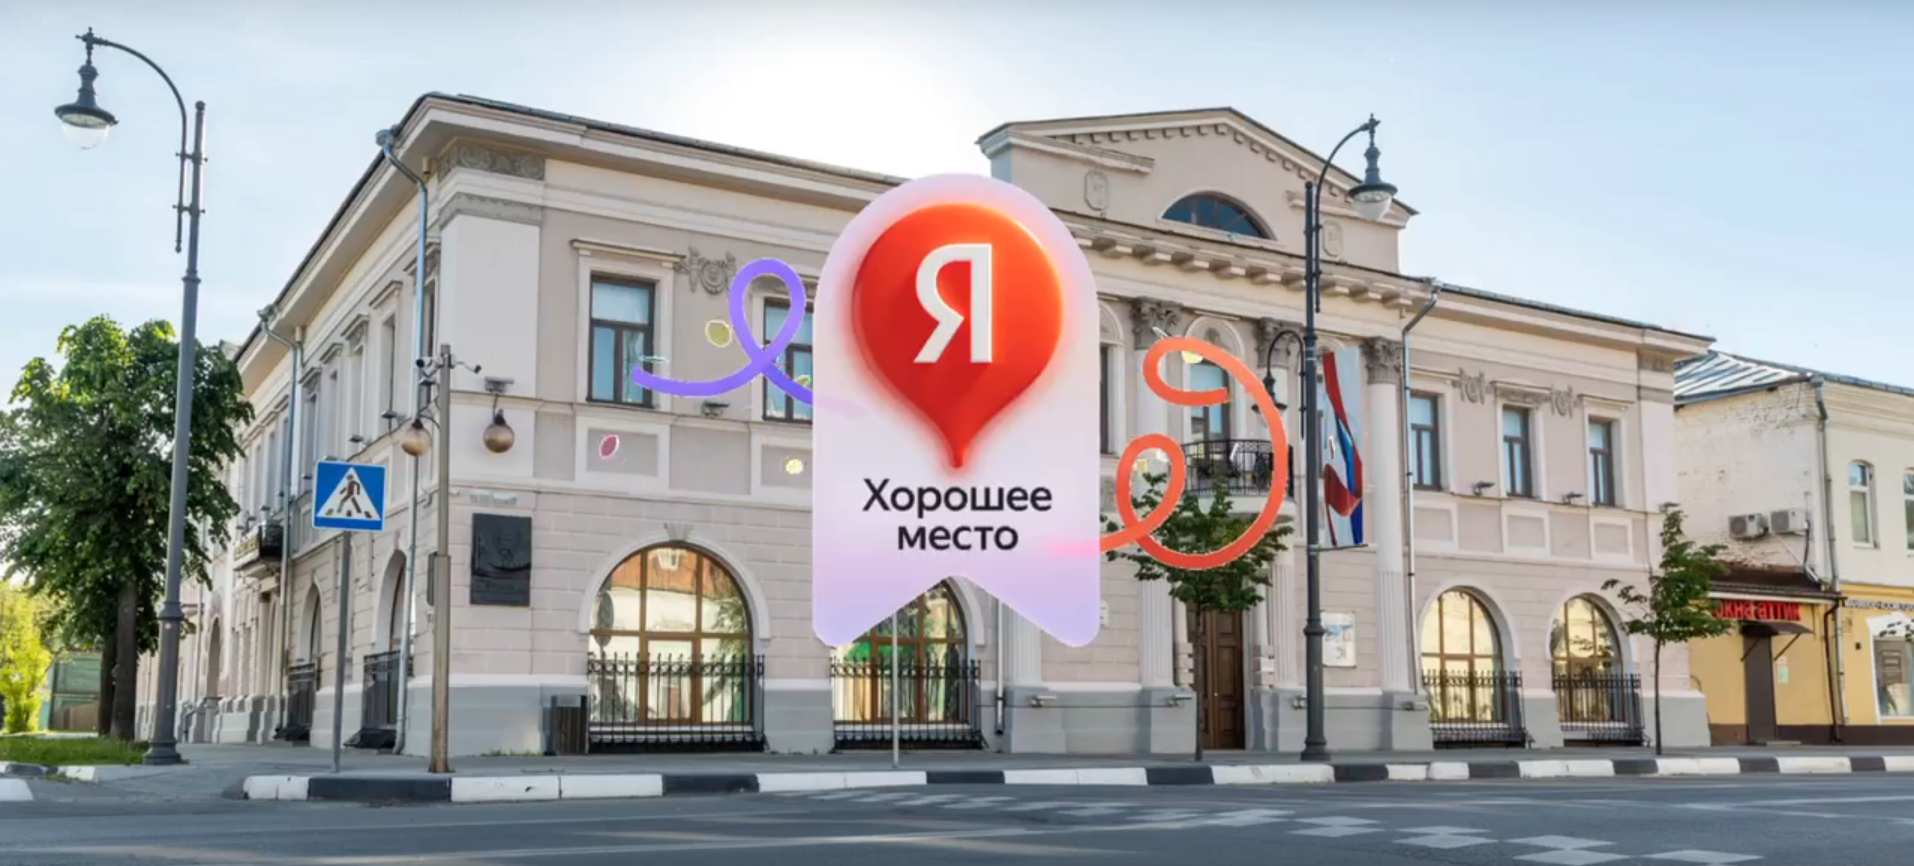 Егорьевский музей отмечен наградой Яндекса